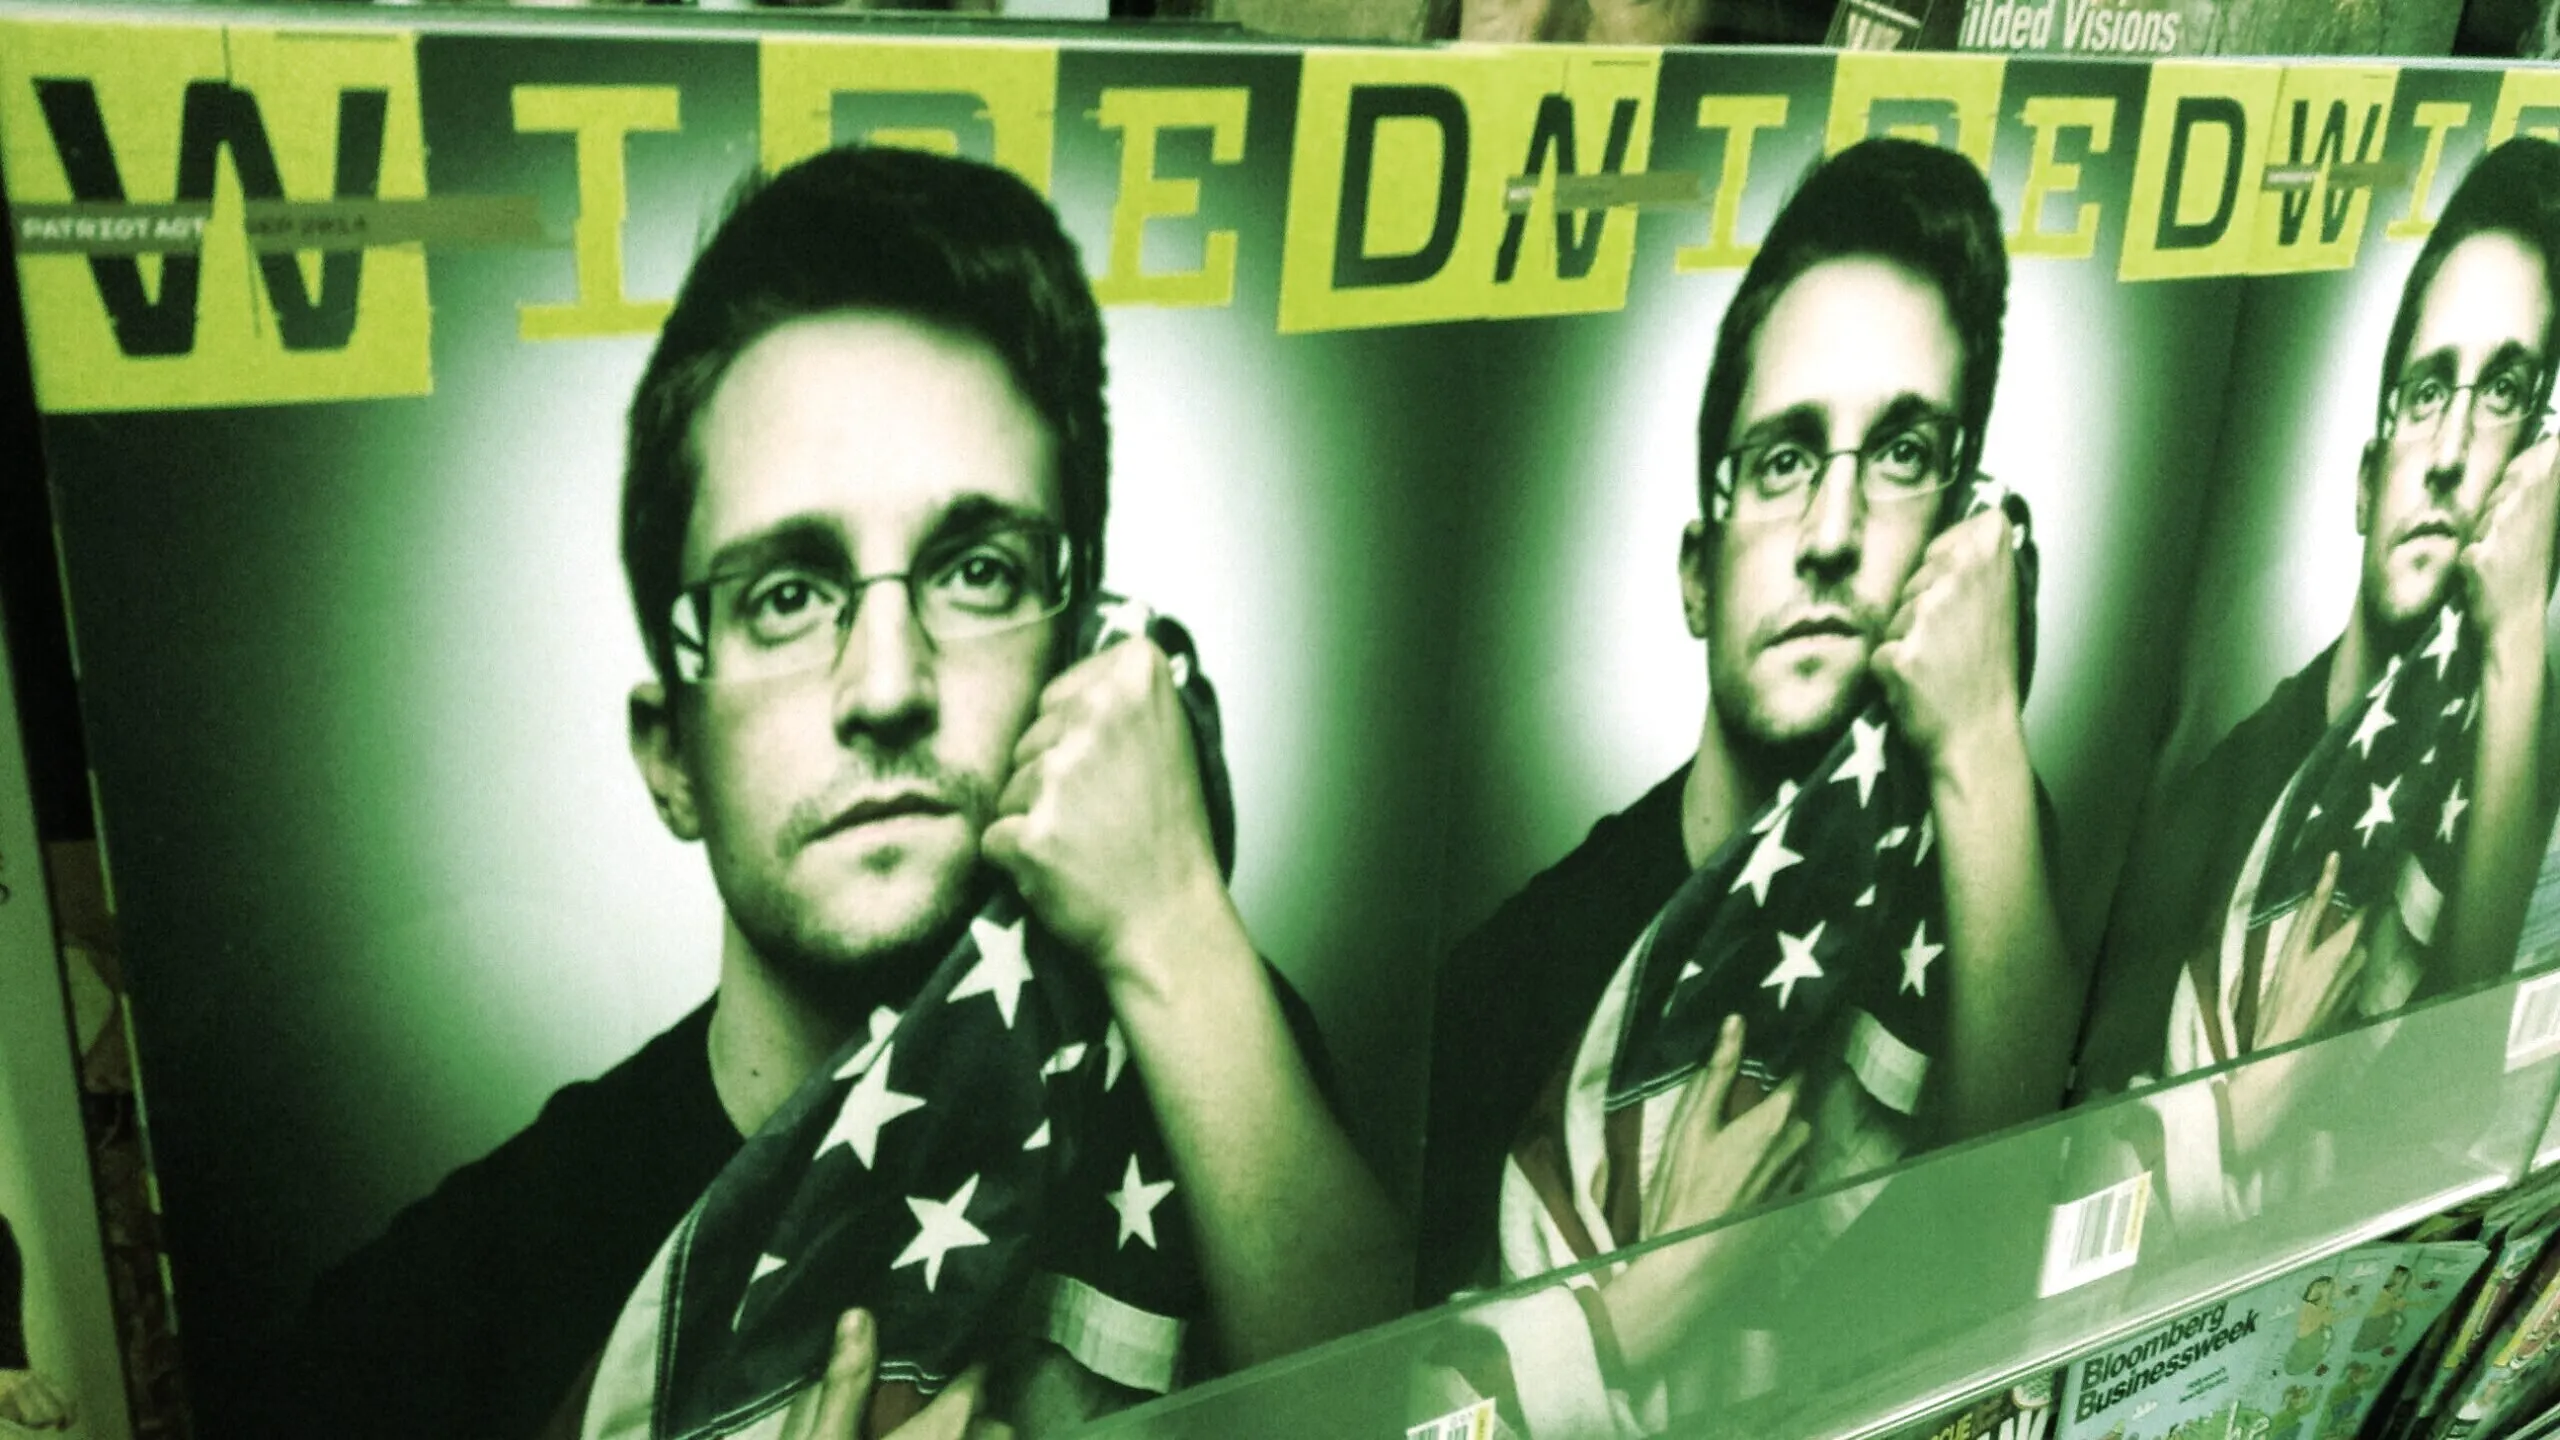 Edward Snowden en la portada de la revista Wired. Imagen:(CC BY 2.0) Mike Mozart